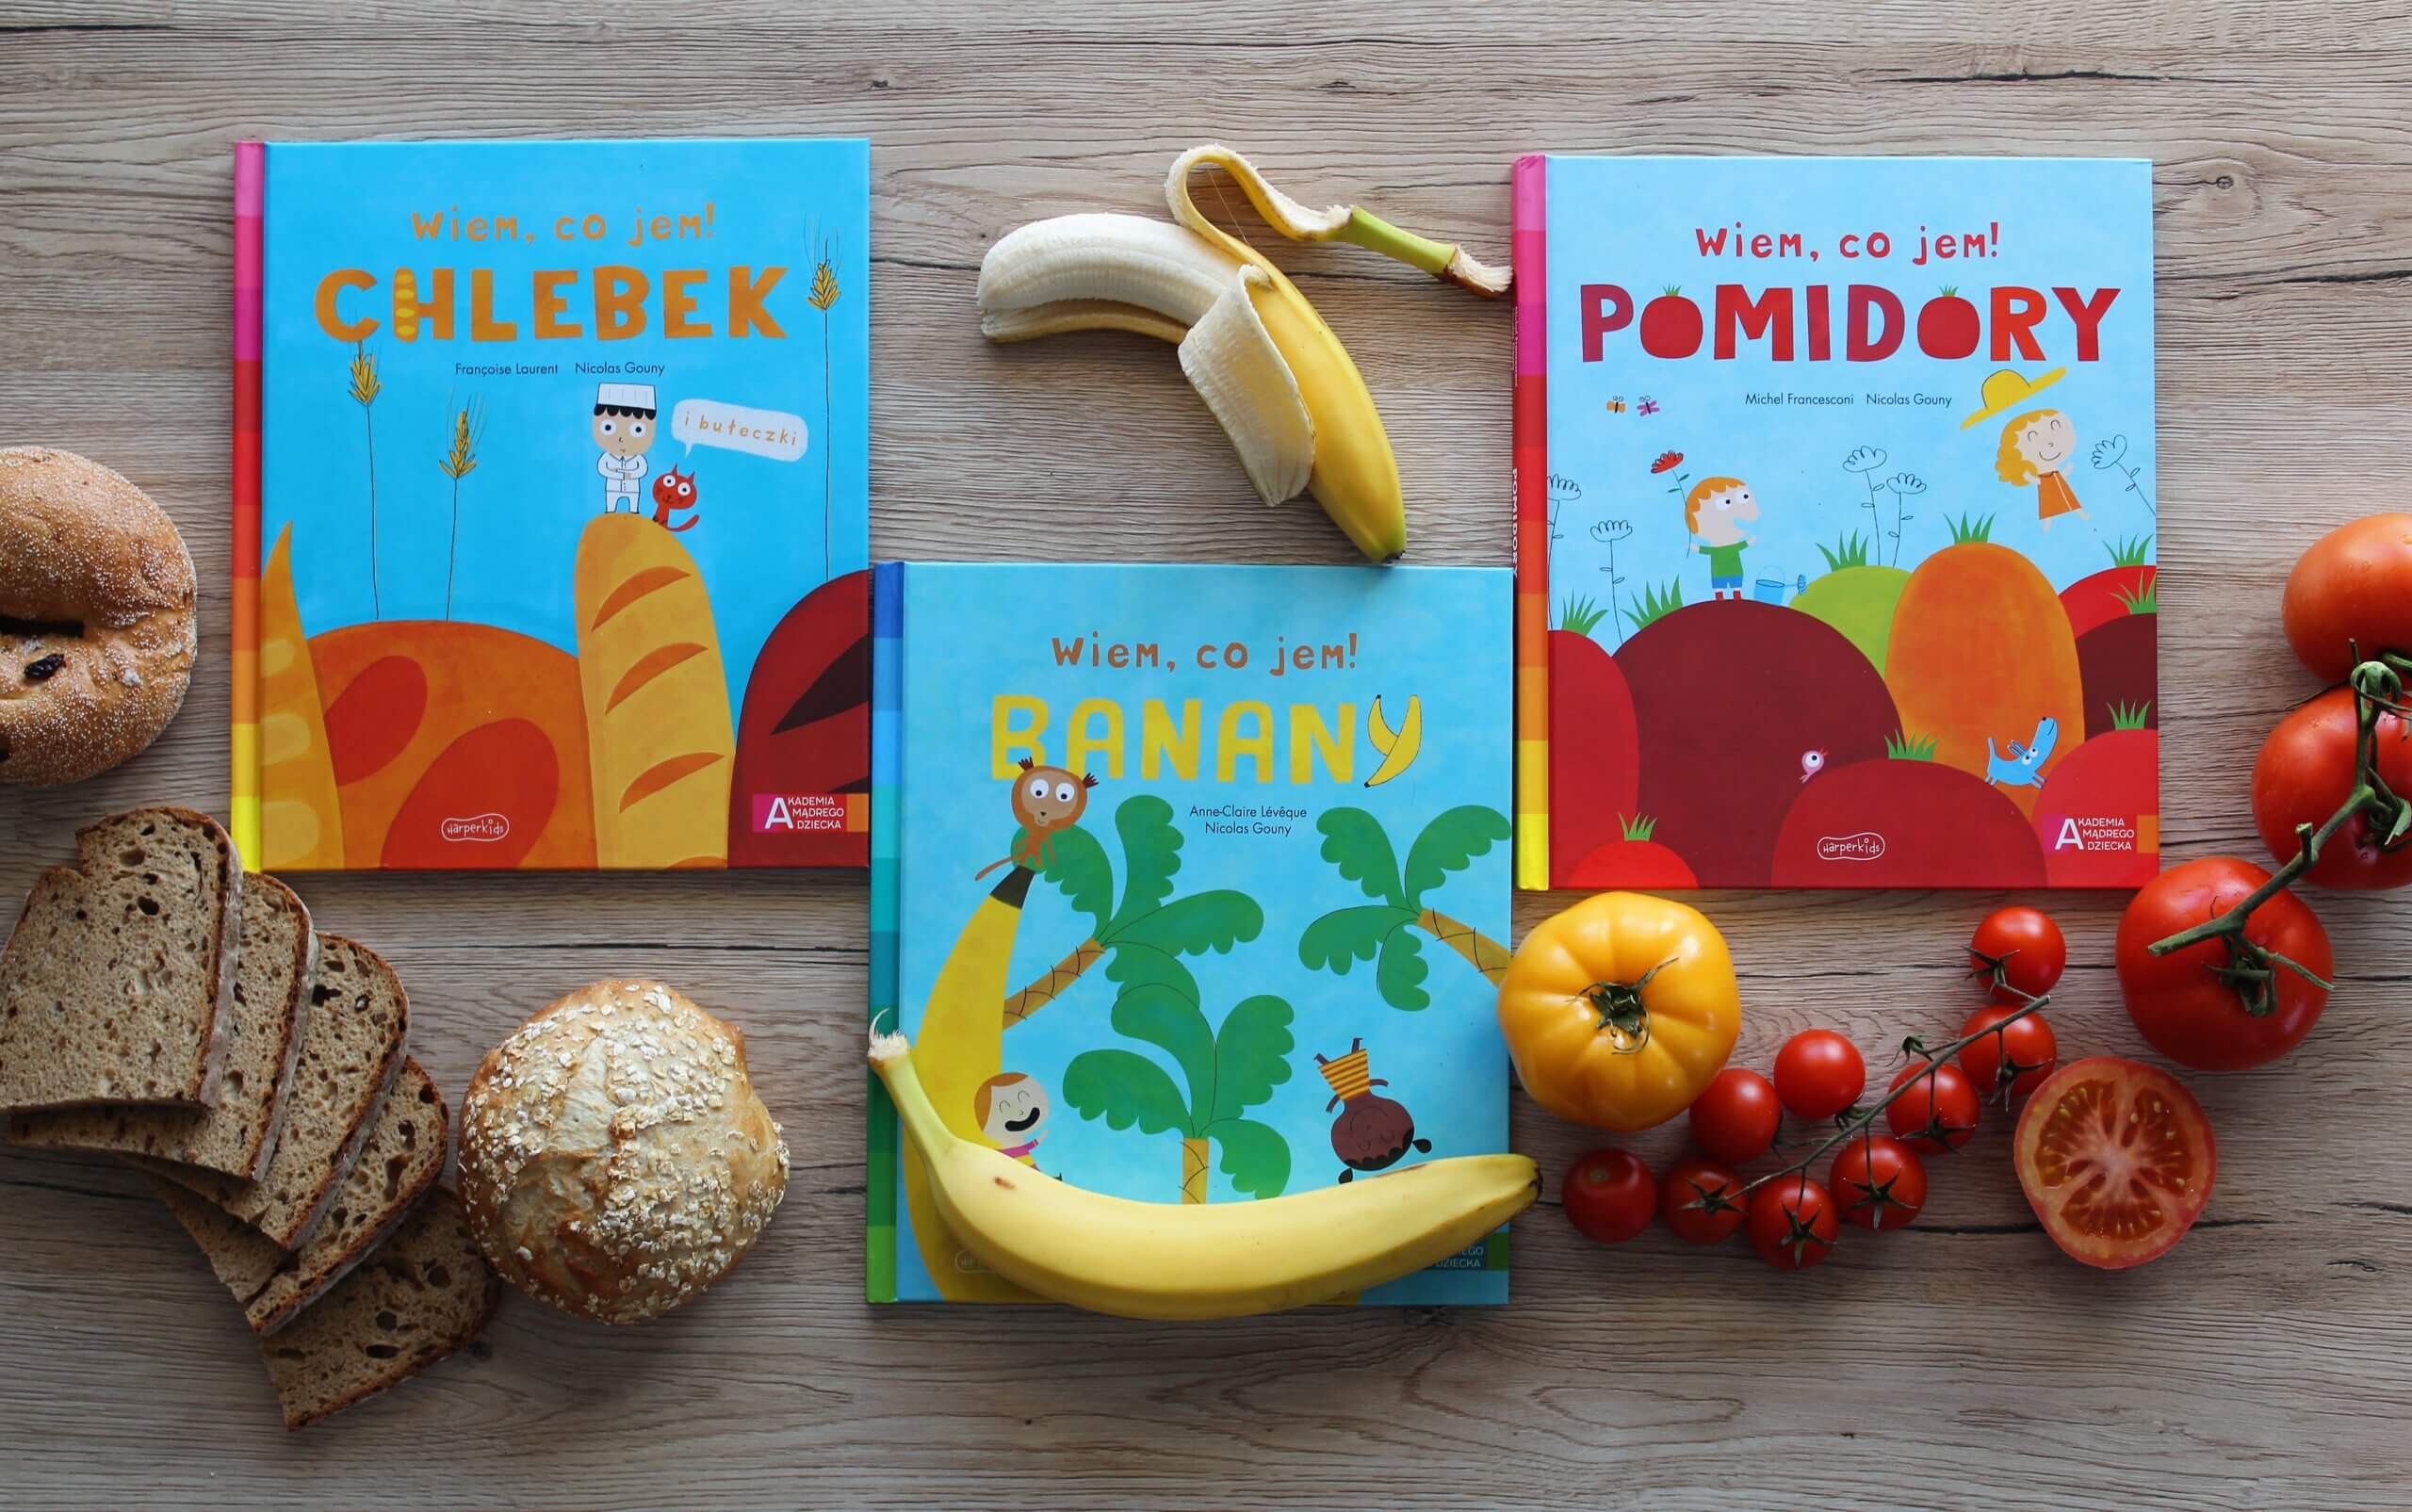 Piosenka O Jedzeniu Dla Dzieci Wiem, co jem - książki o jedzeniu dla dzieci - Blog Matczyne Fanaberie